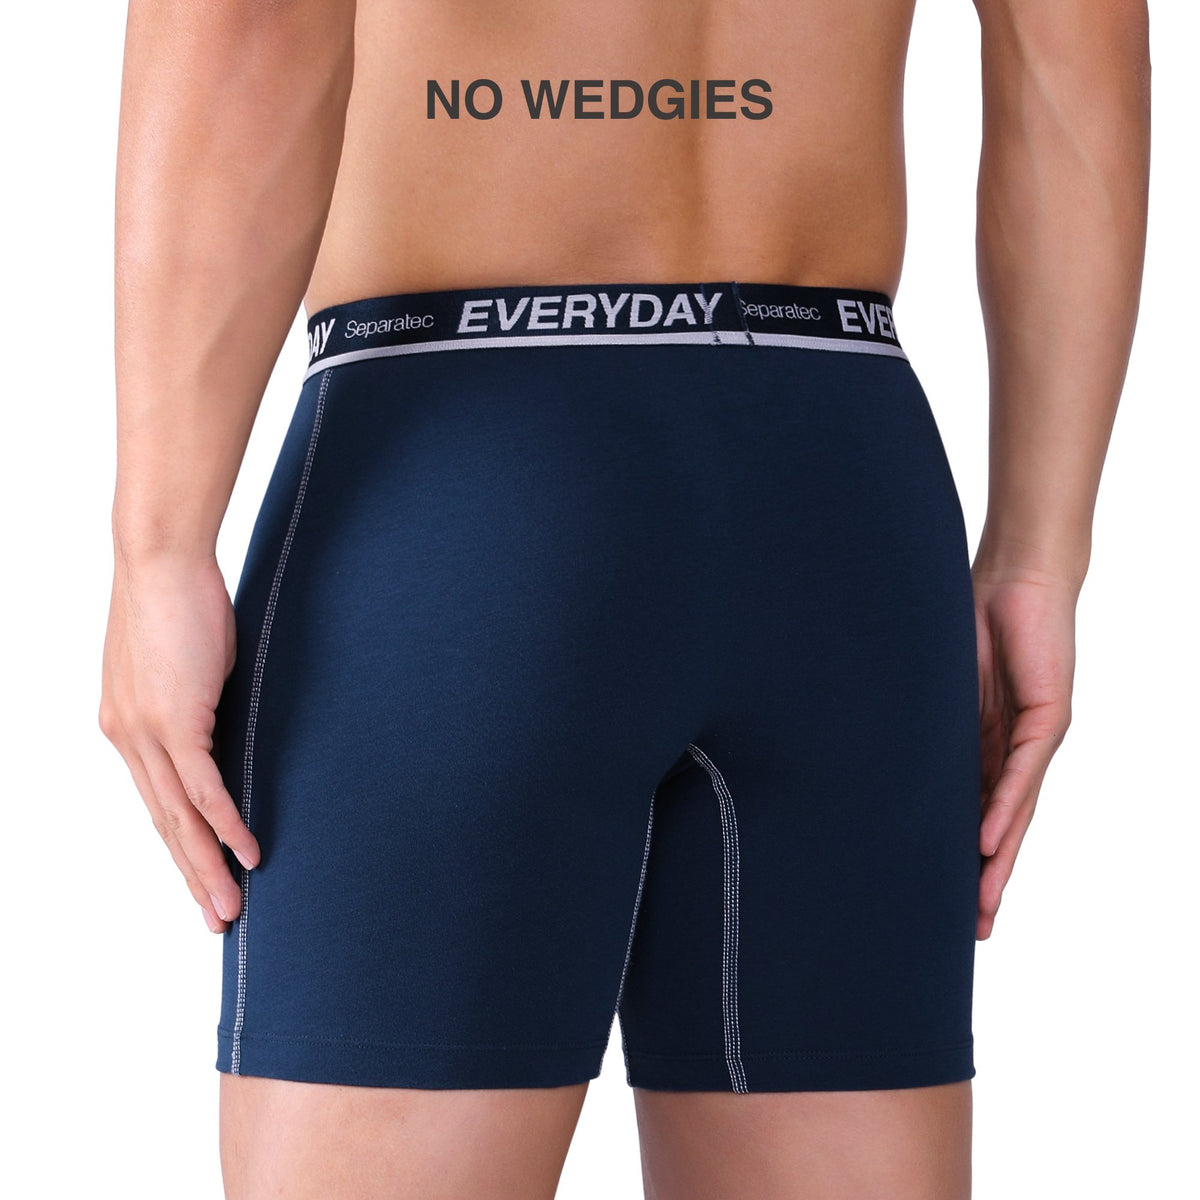 zuwimk Boxer Briefs,Men's Dual Pouch Underwear Comfortable Ultra